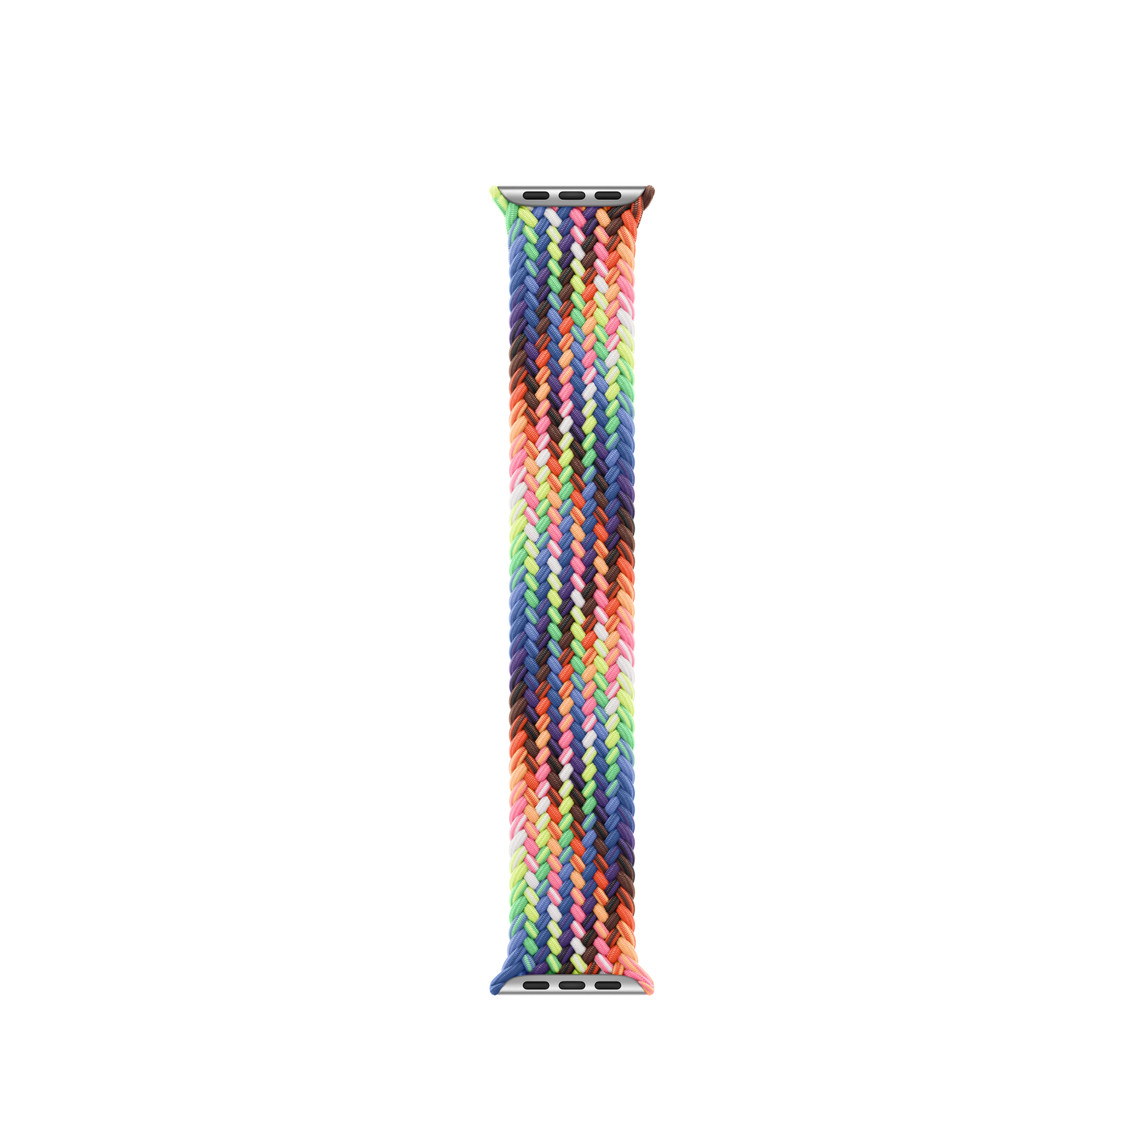 Pulseira loop solo trançada edição Orgulho, fios entrelaçados com cores fluorescentes inspiradas na vibrante bandeira do Orgulho, sem fechos nem fivelas.